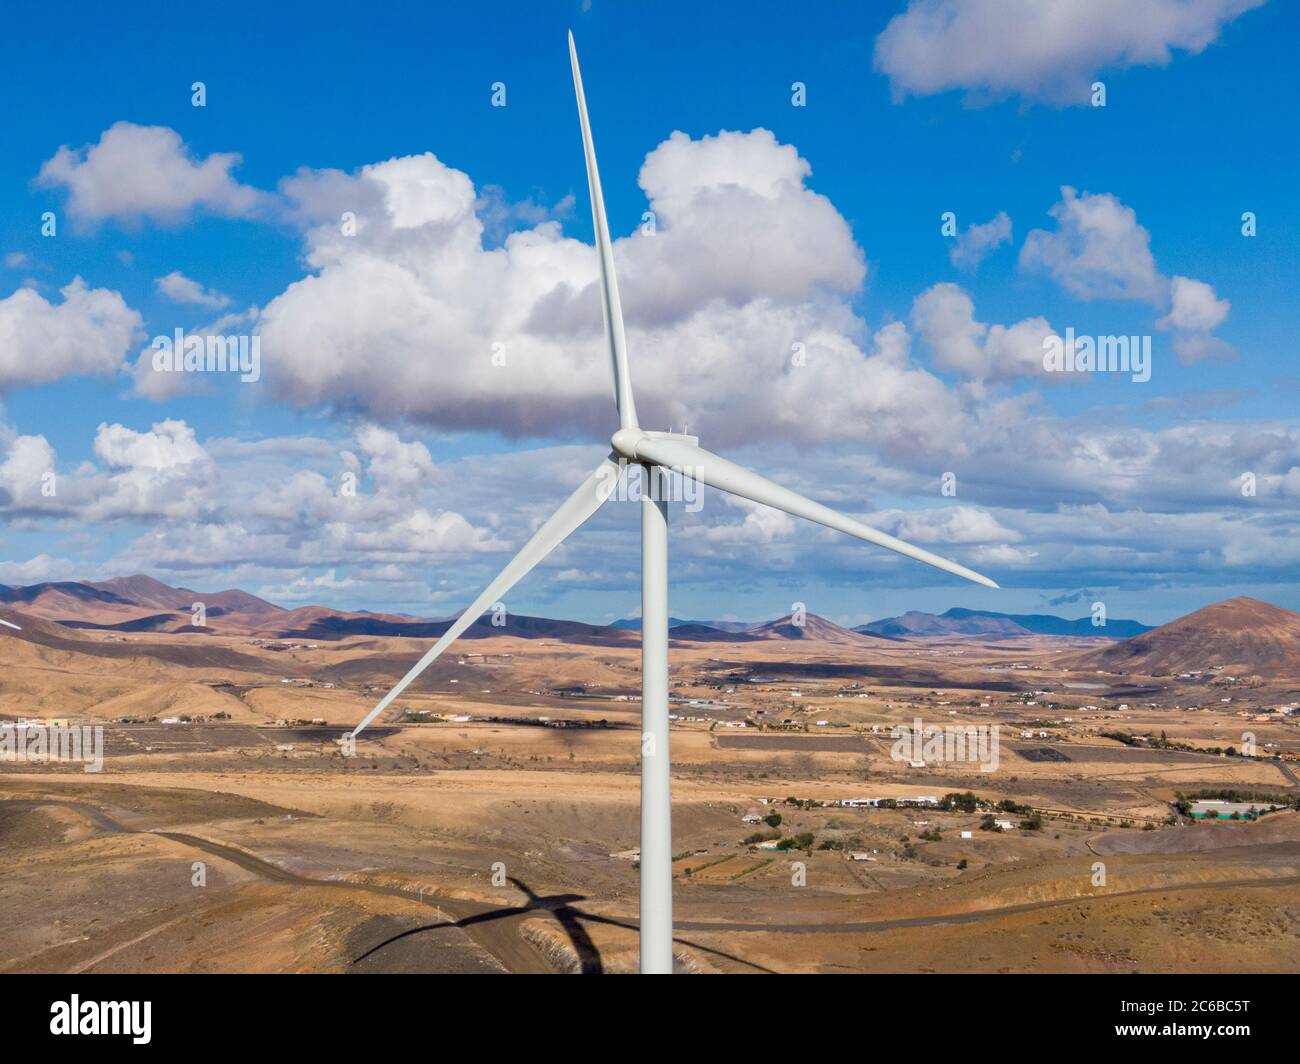 Granja moderna de molinos de viento, Fuerteventura, Islas Canarias, España, Atlántico, Europa Foto de stock